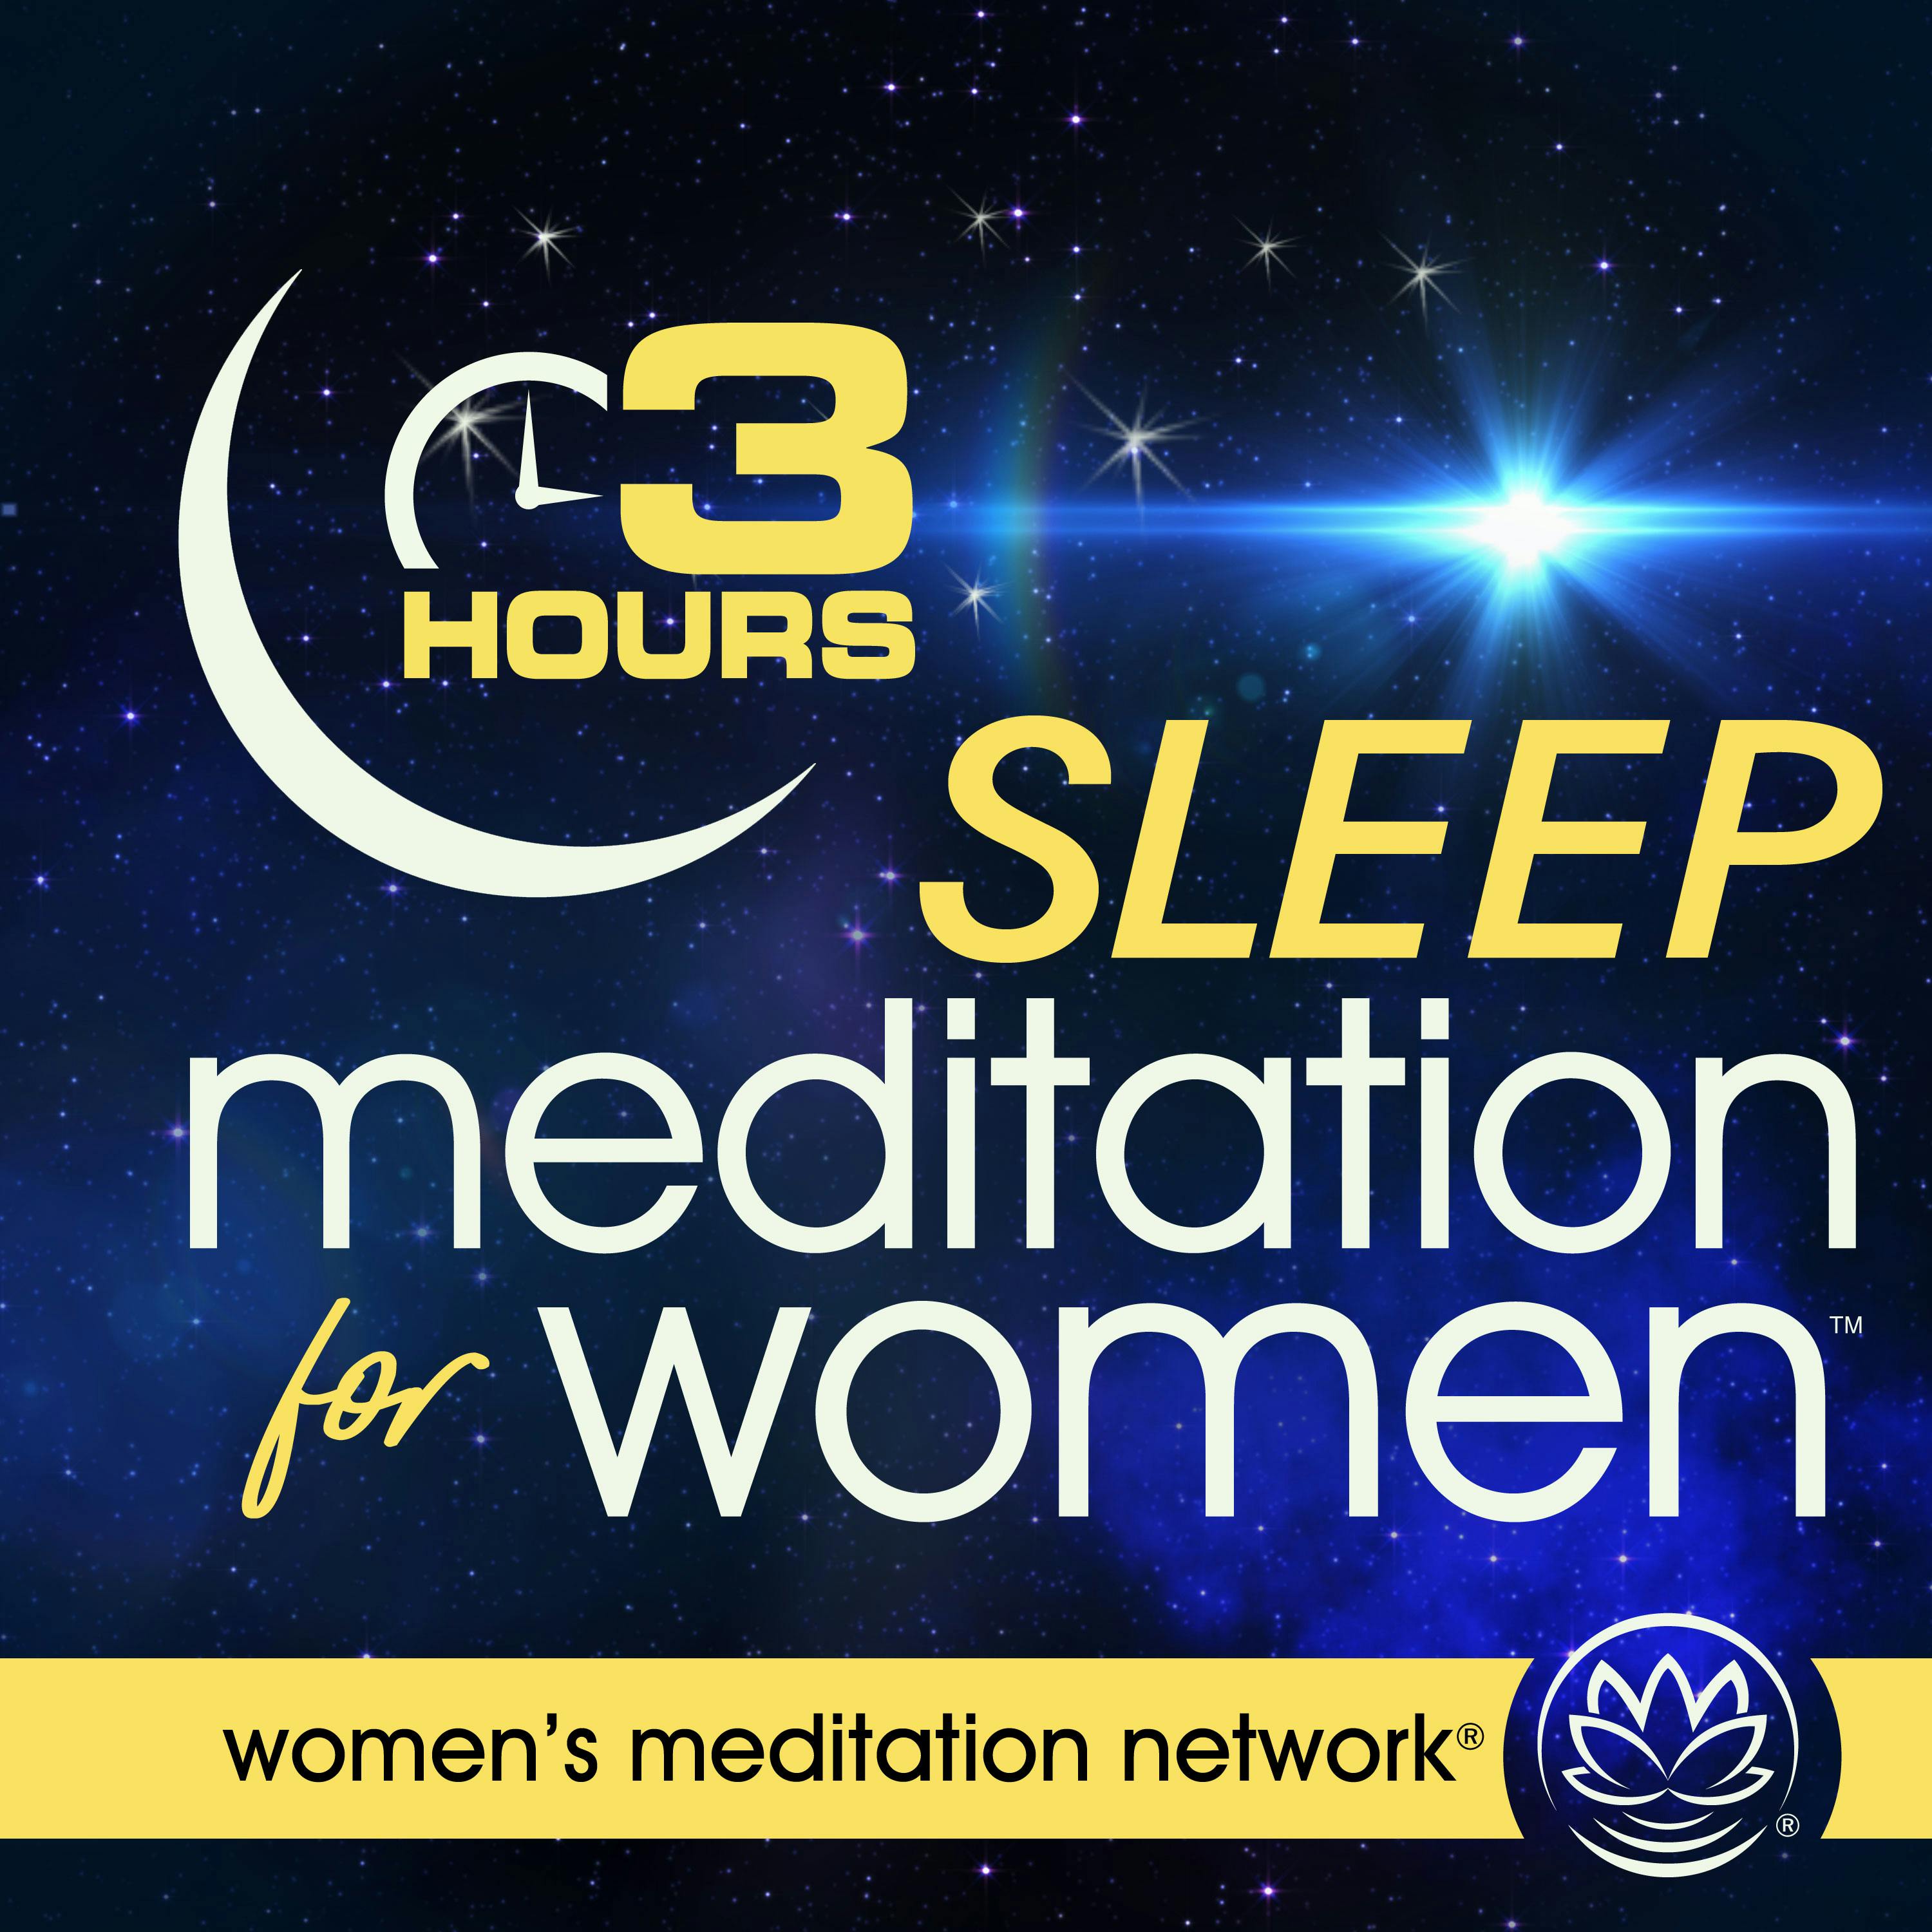 Sleep Meditation for Women 3 HOURS podcast tile